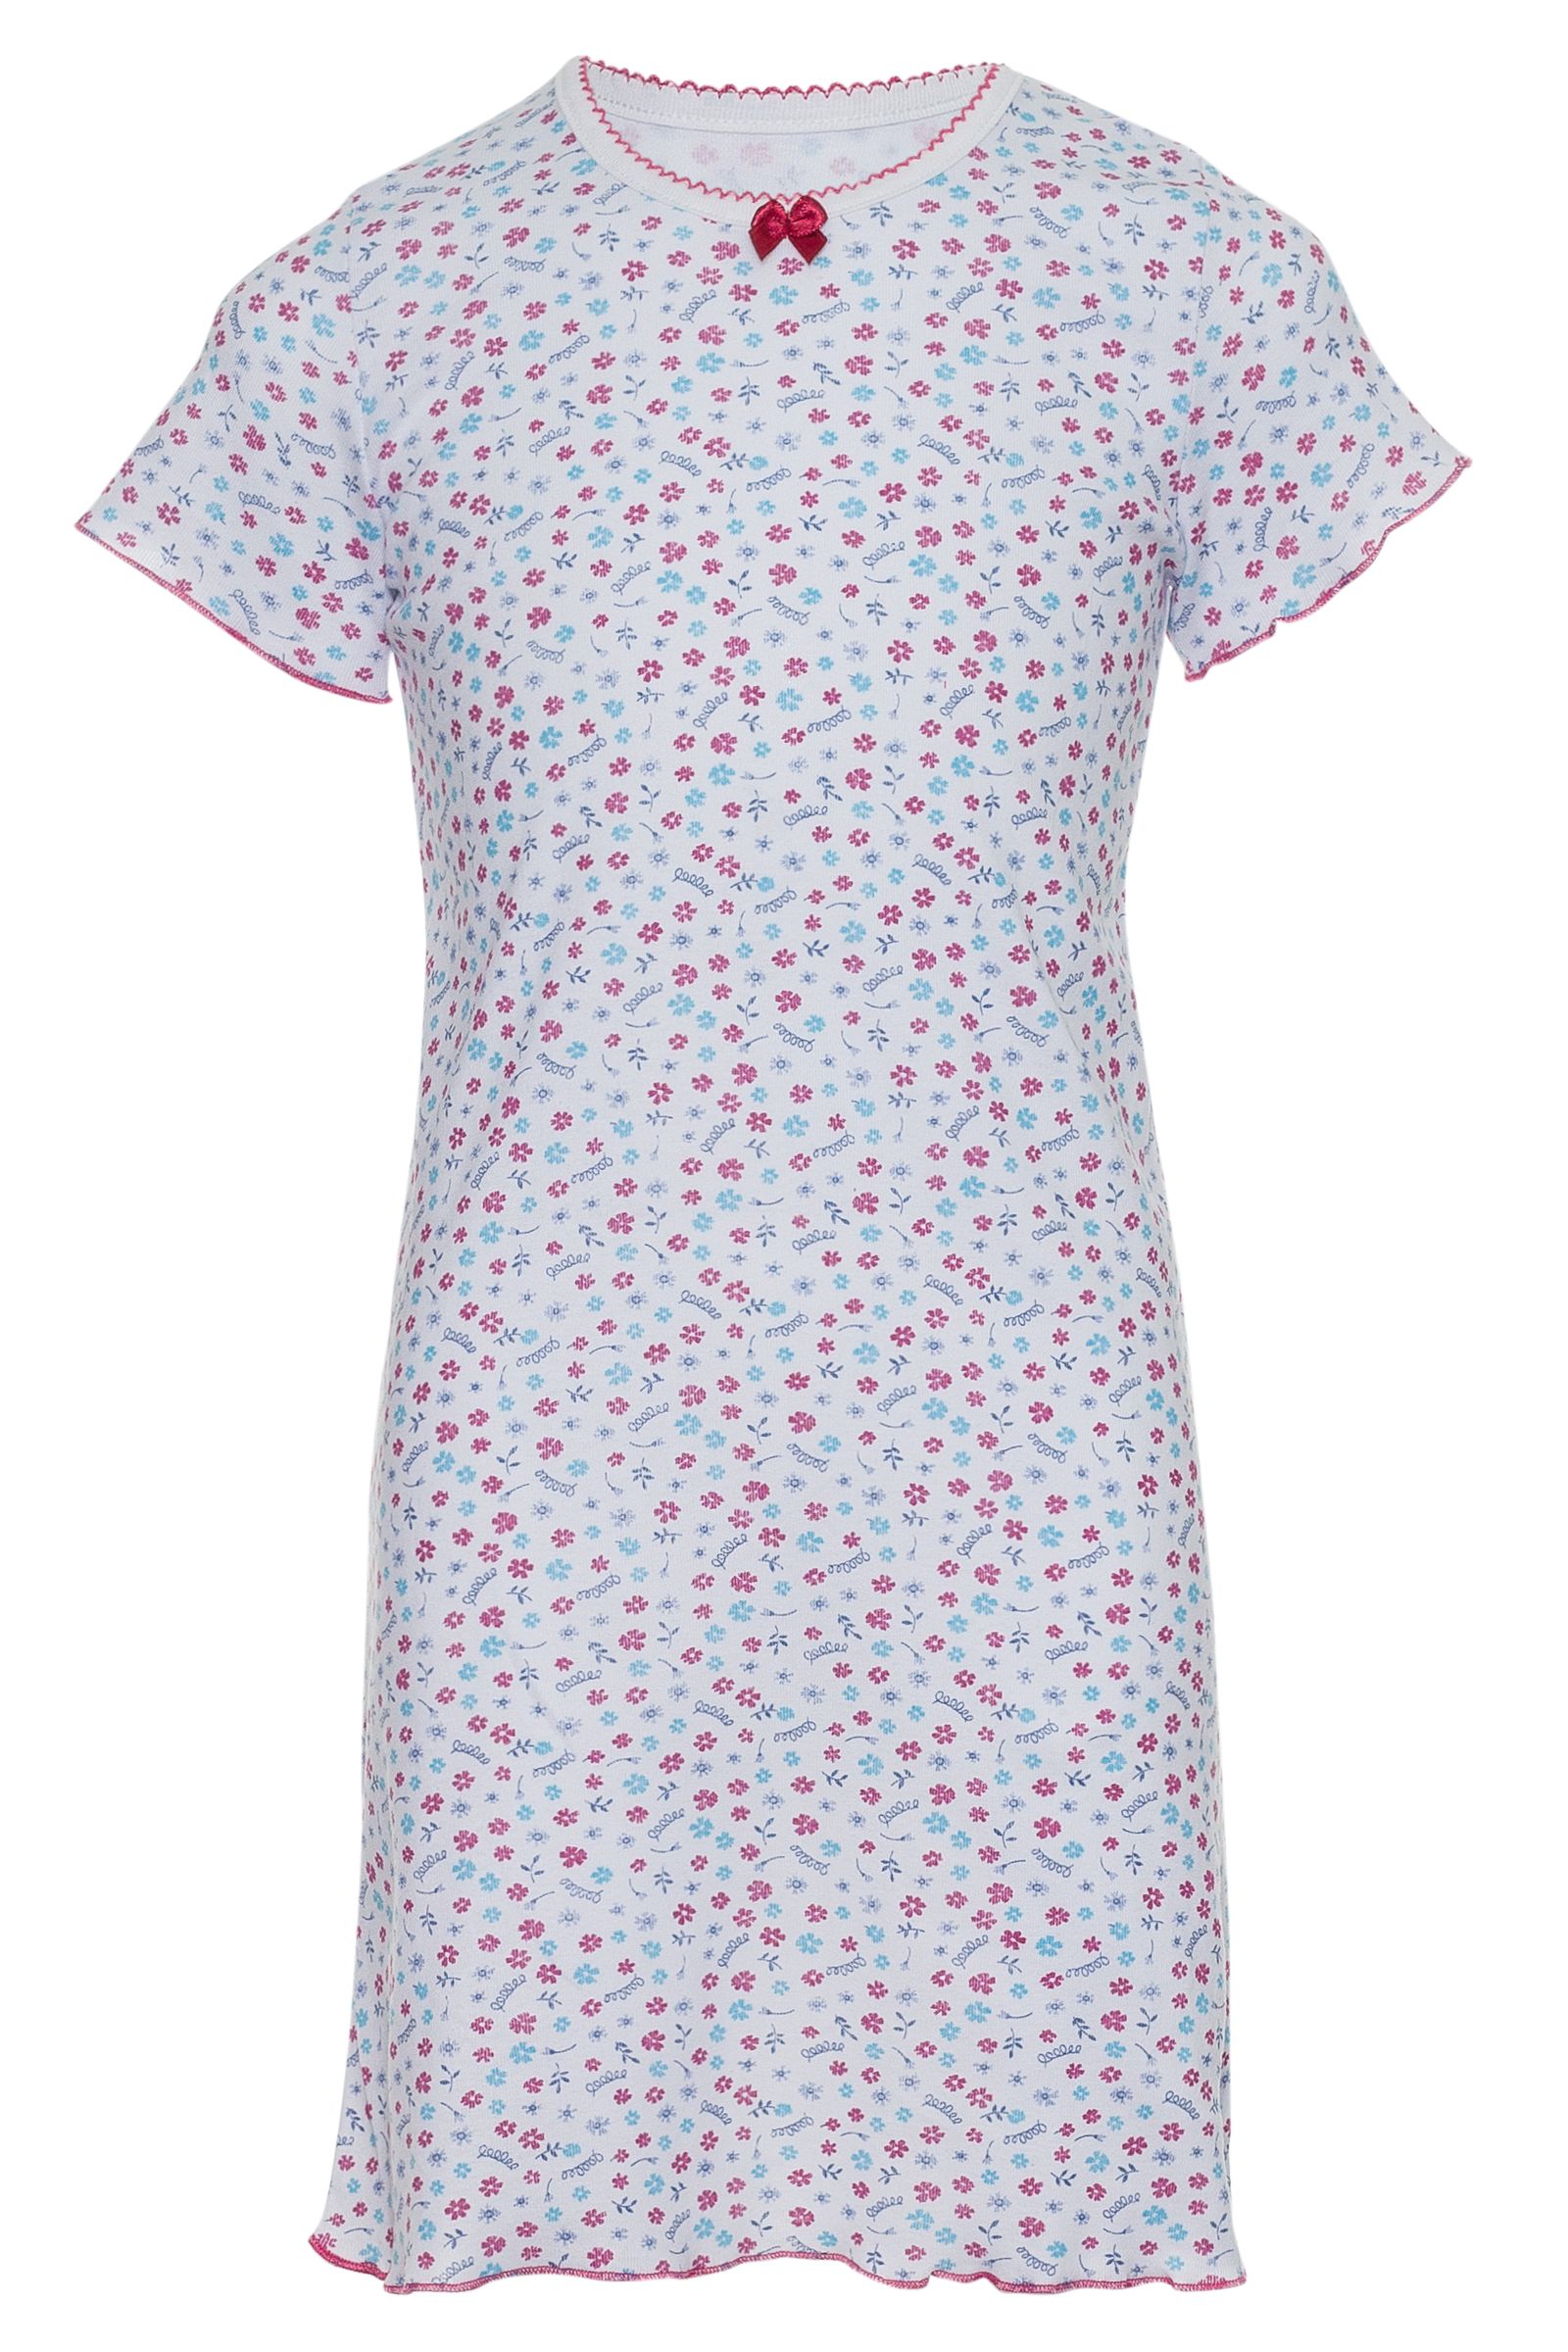 Ночная сорочка-СР03-1798 оптом от производителя детской одежды 'Алёна'